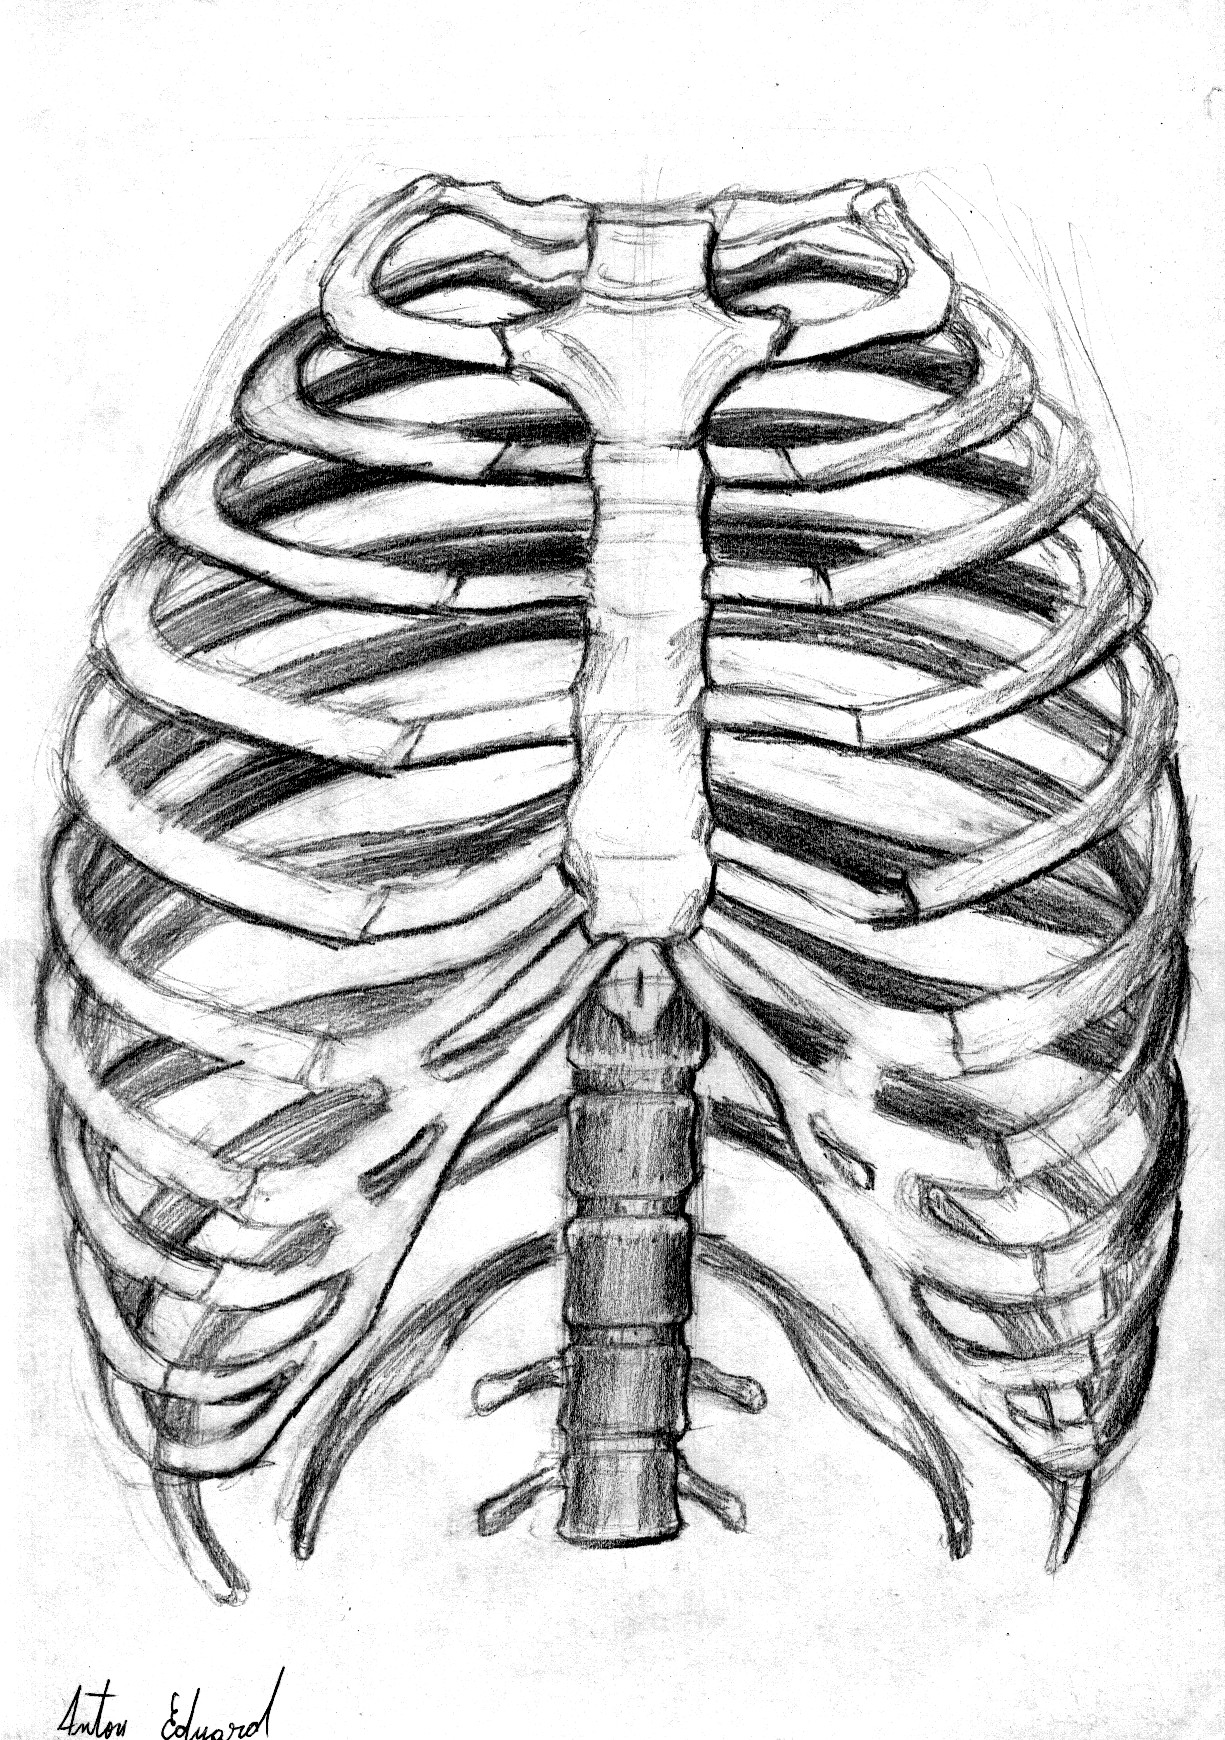 Anatomy sketch 4 by MegaDrawer02 on DeviantArt